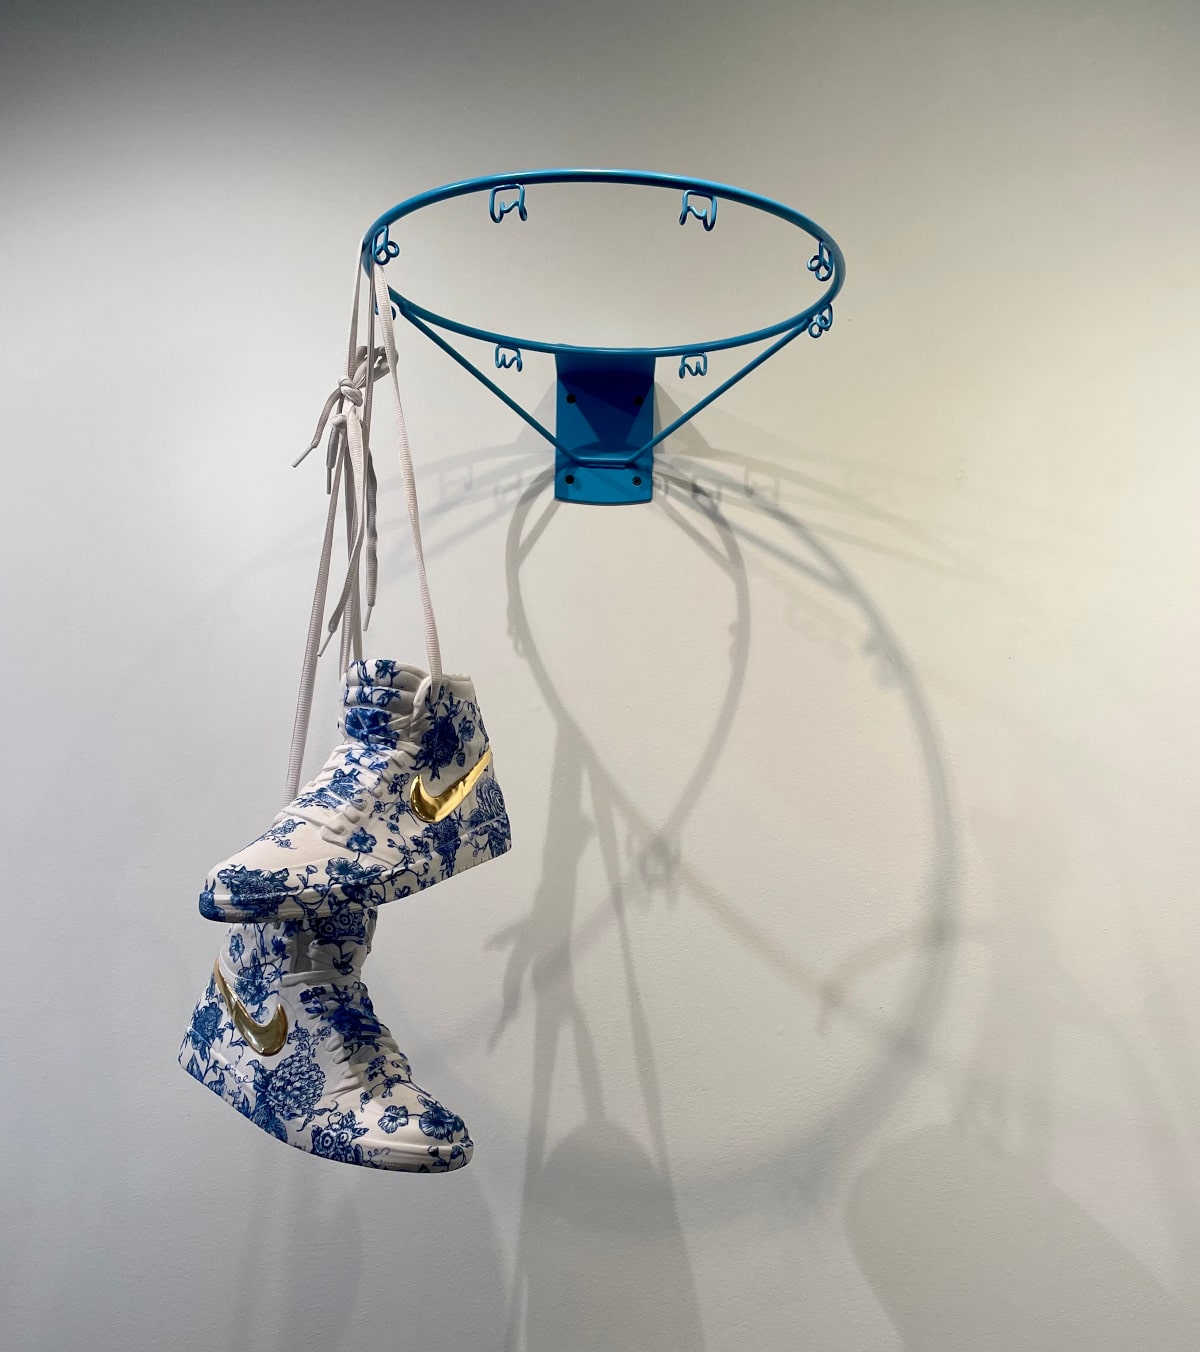 Sneakers and basketball hoop made of porcelain by Brock DeBoer